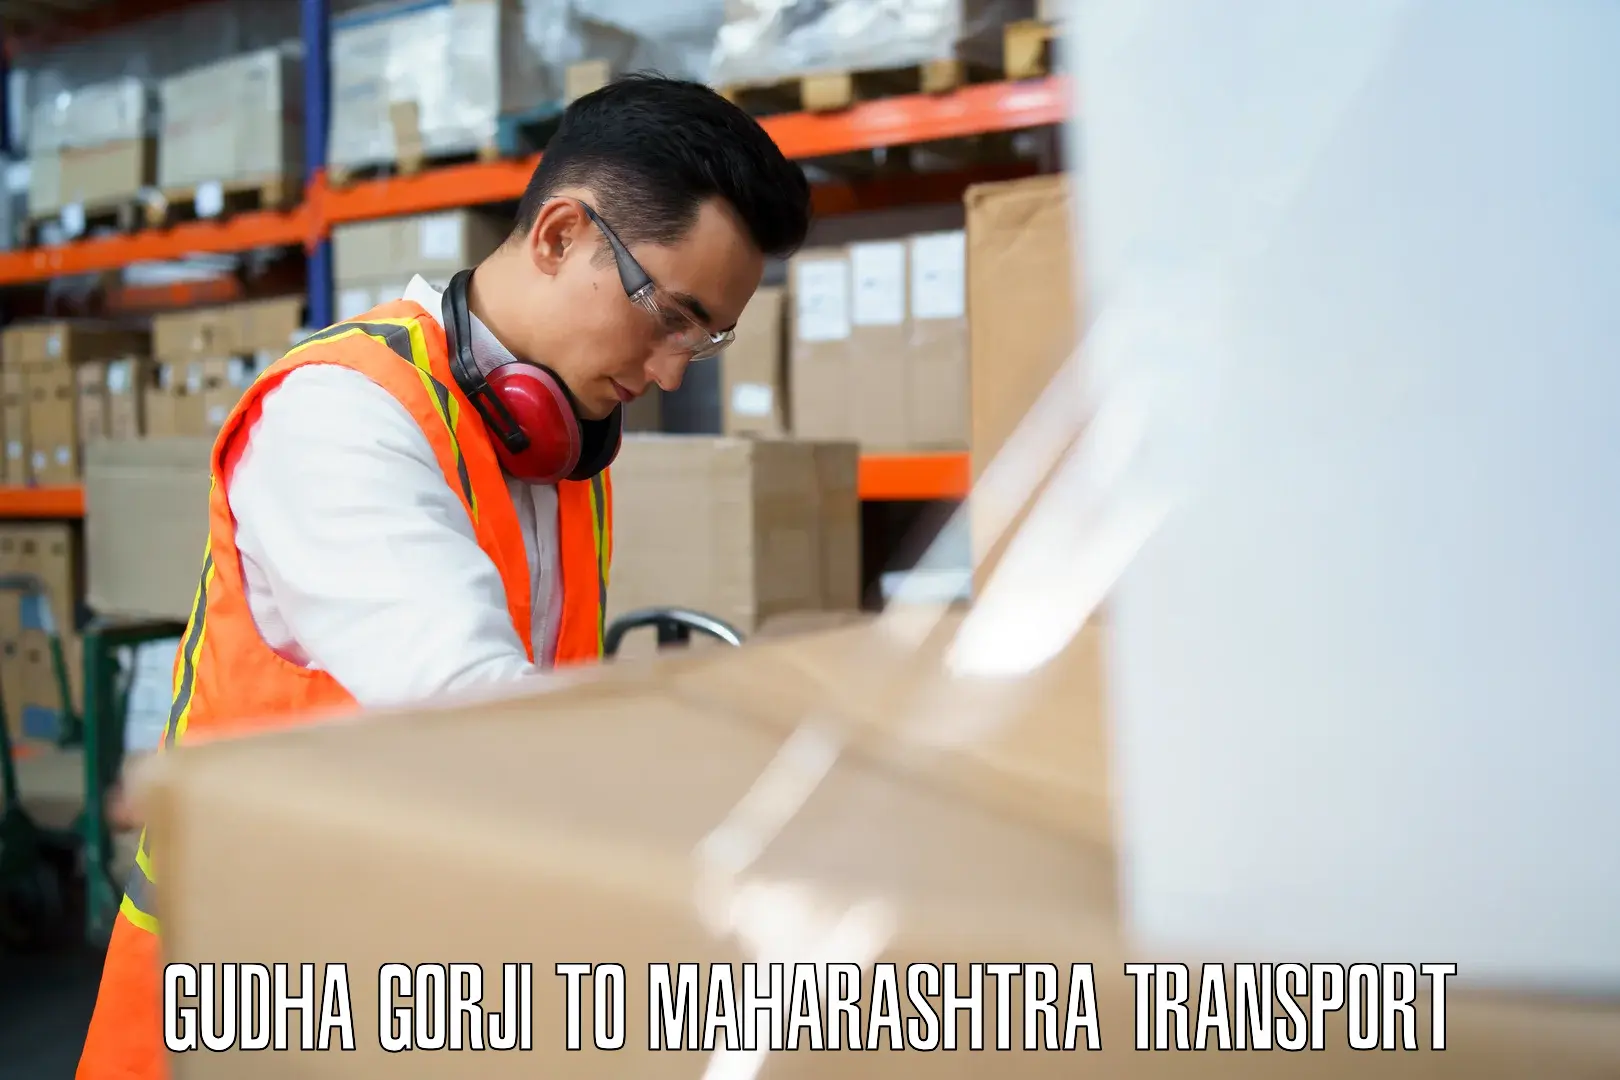 Part load transport service in India Gudha Gorji to Koregaon